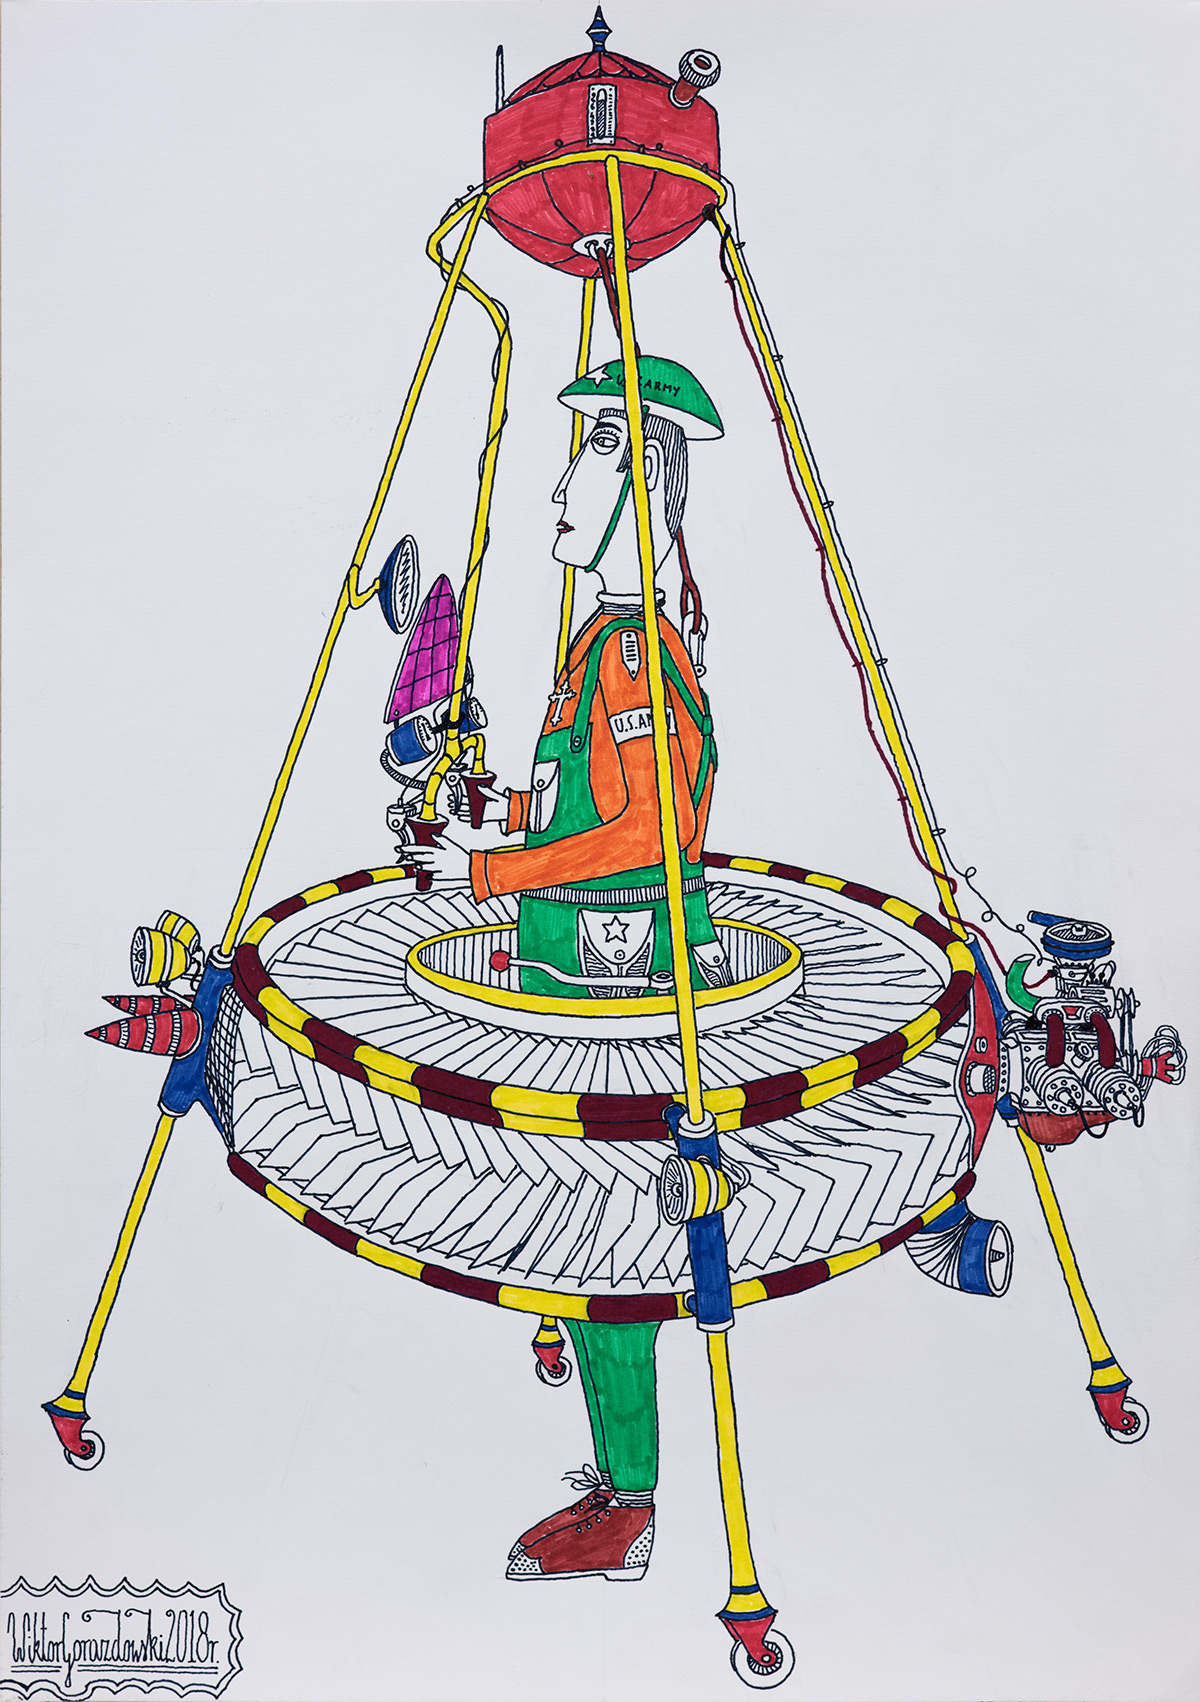 Wiktor Gorazdowski - Indywidualny zestaw latający Individual Flying Set (Fineliner and marker on paper | Größe: 30 x 42 cm | Preis: 900 PLN)